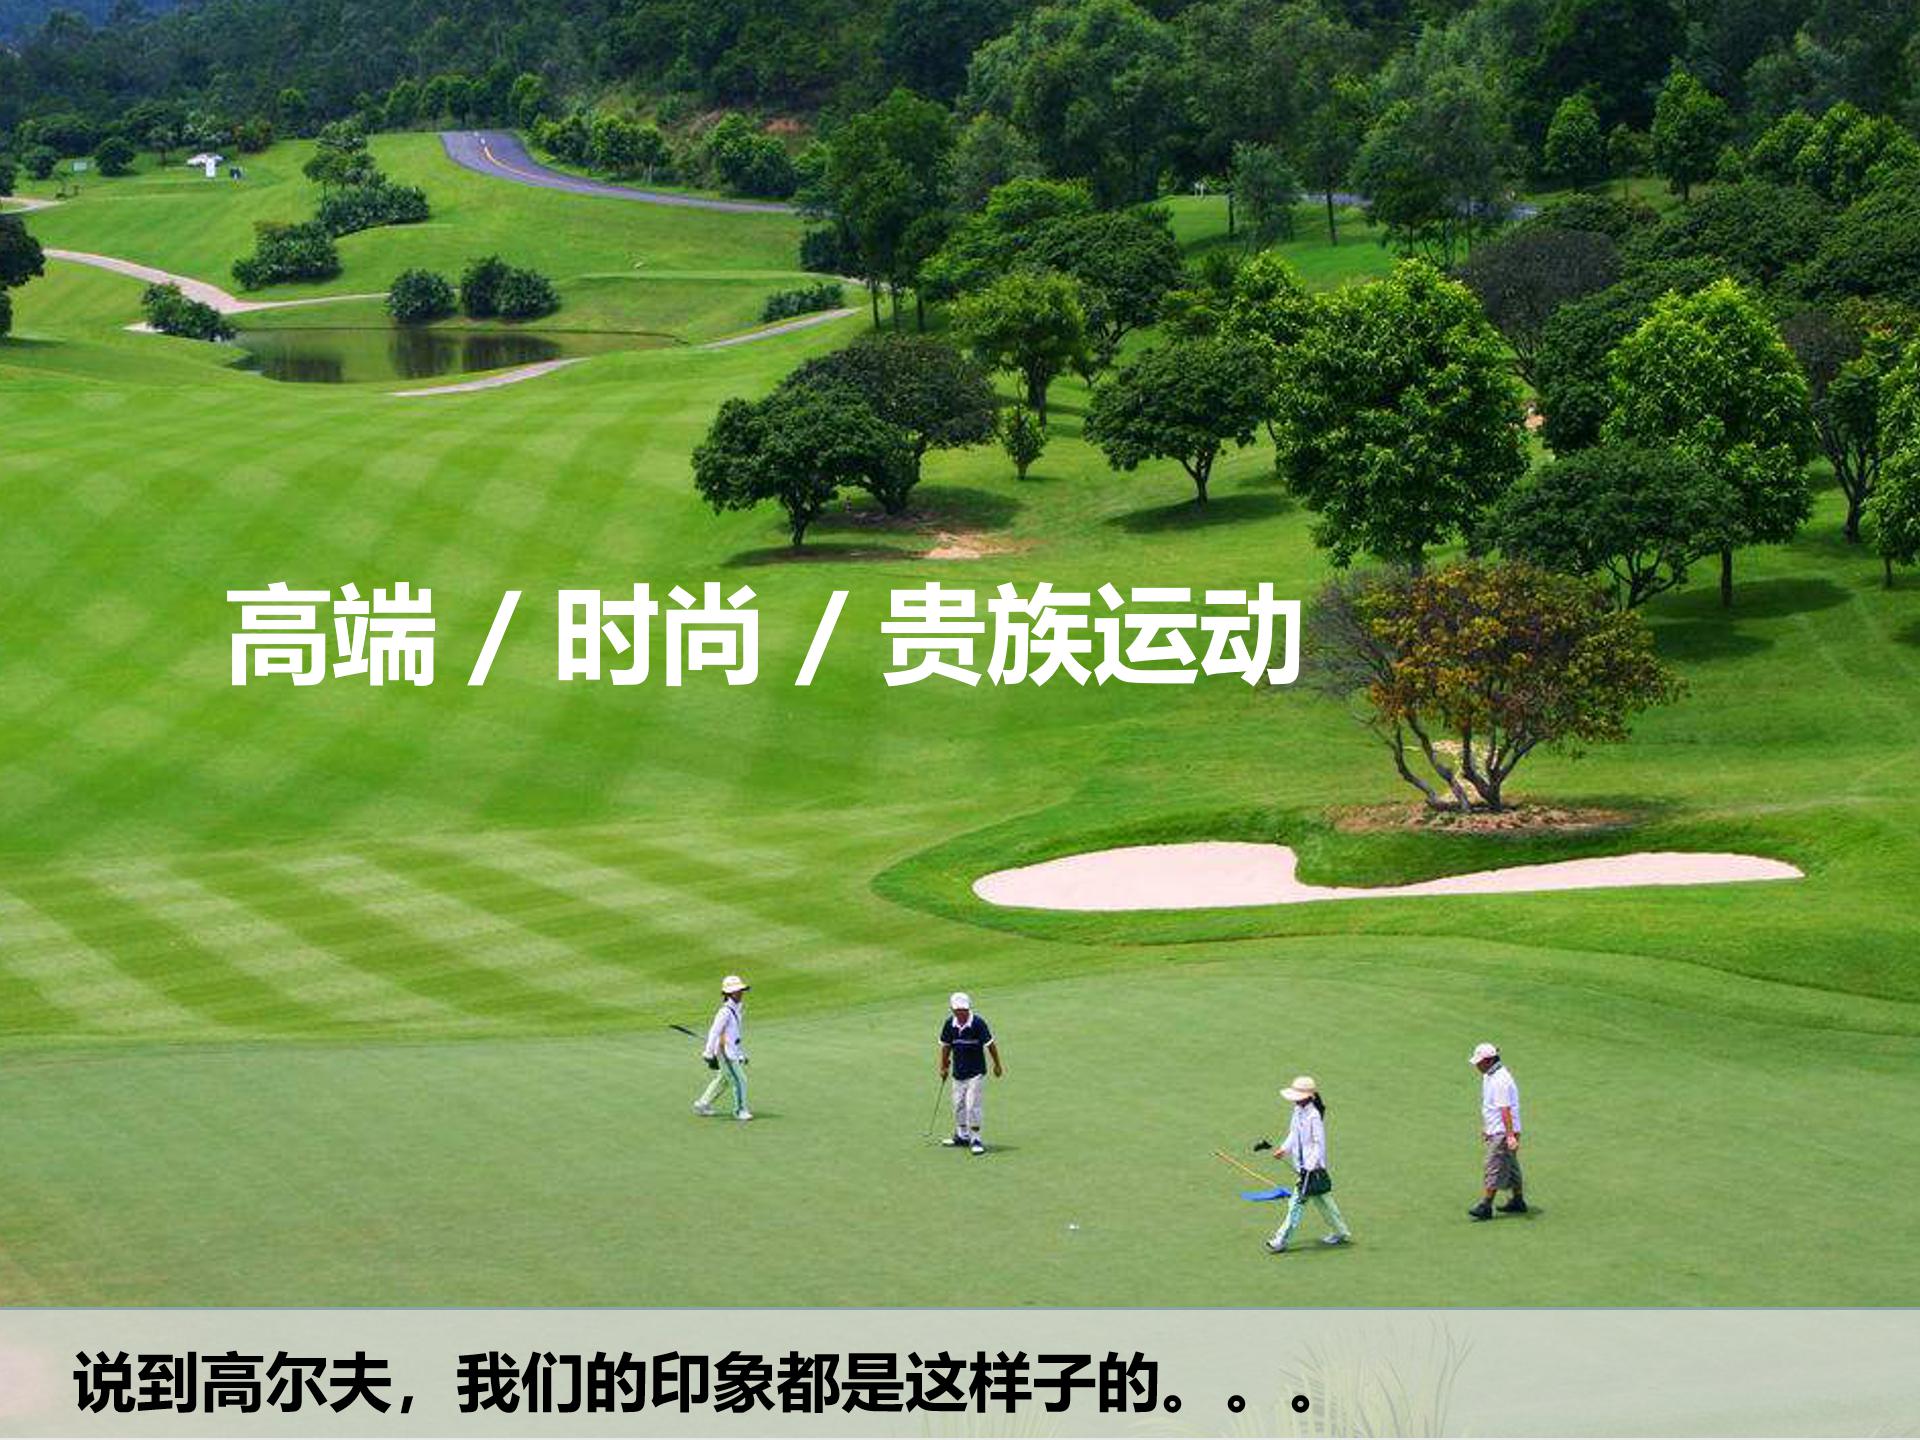 公园高尔夫定向_02.jpg